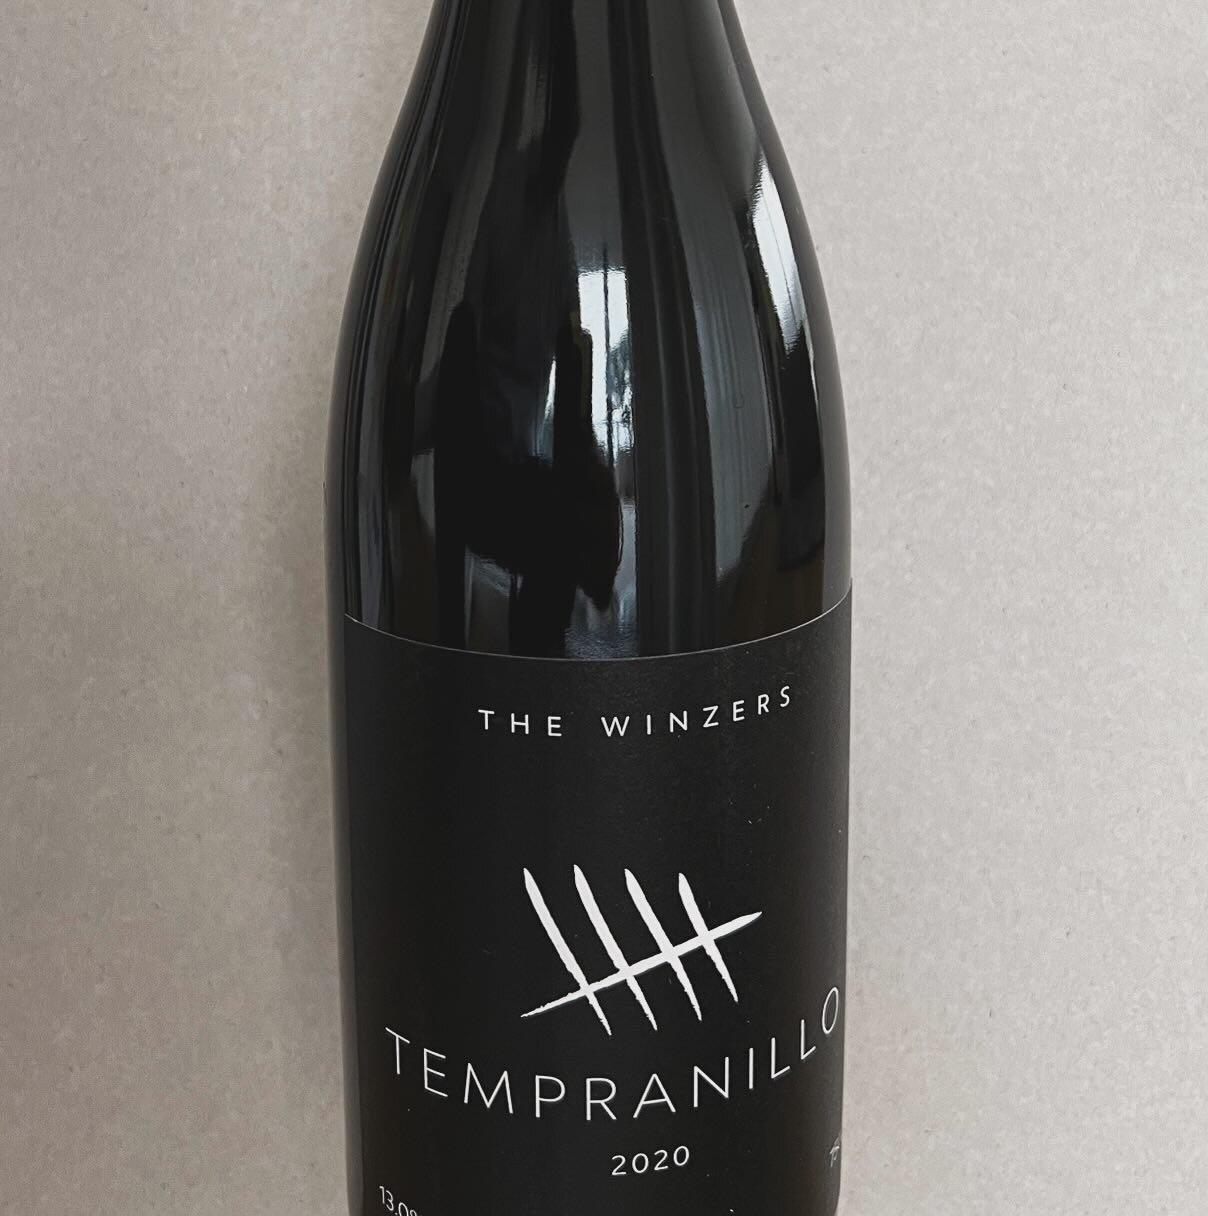 Es gibt ihn wirklich. Tempranillo 2020 !
🍷
.
.
.
.
.
#thewinzers #tempranillo #premiere #weltneuheit #rotwein #schweizerwein #instawine #winelover #rarit&auml;t #z&uuml;rich #aoc